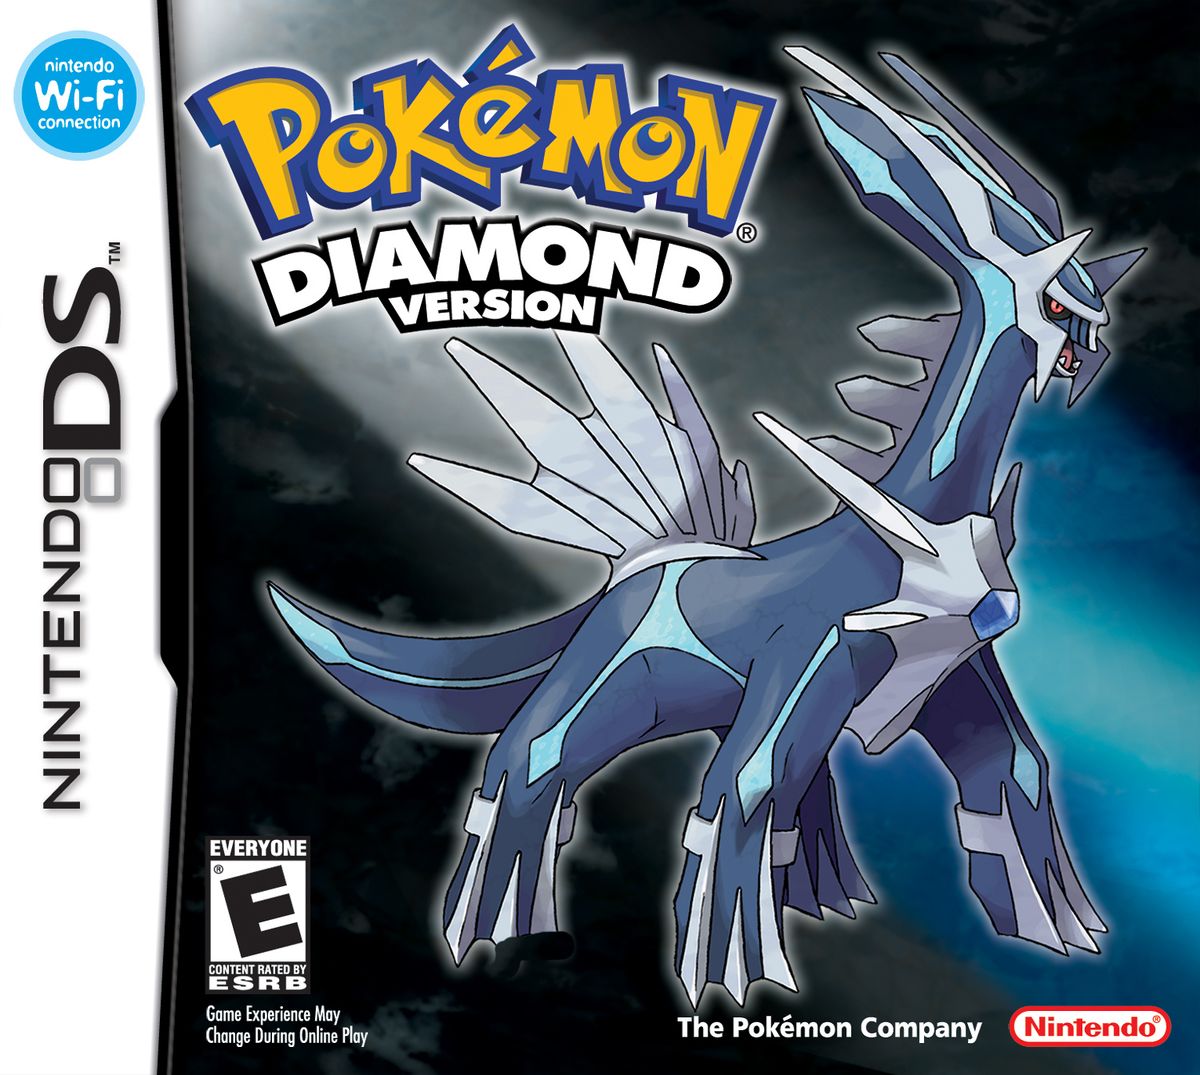 Pokémon Diamond and Pearl